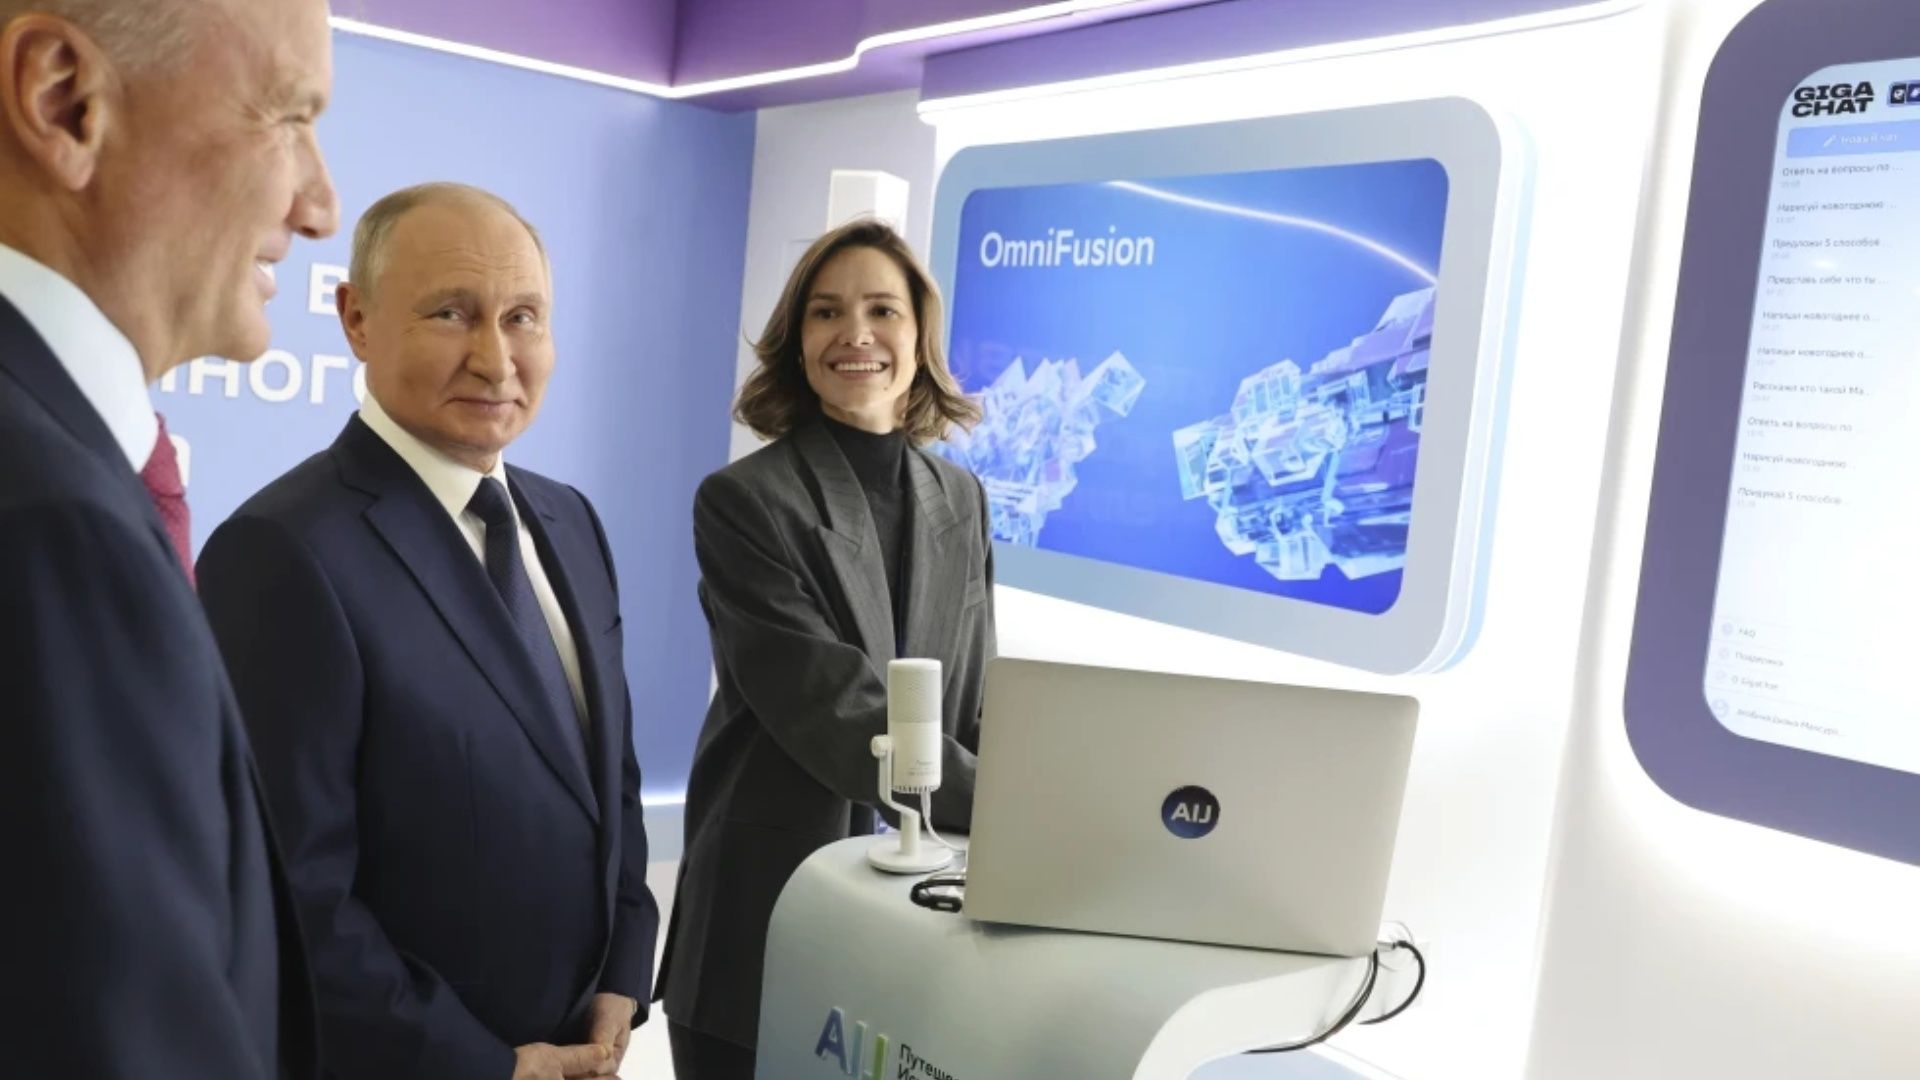 El presidente ruso, Vladimir Putin, visita una exposición de una conferencia sobre inteligencia artificial en Moscú